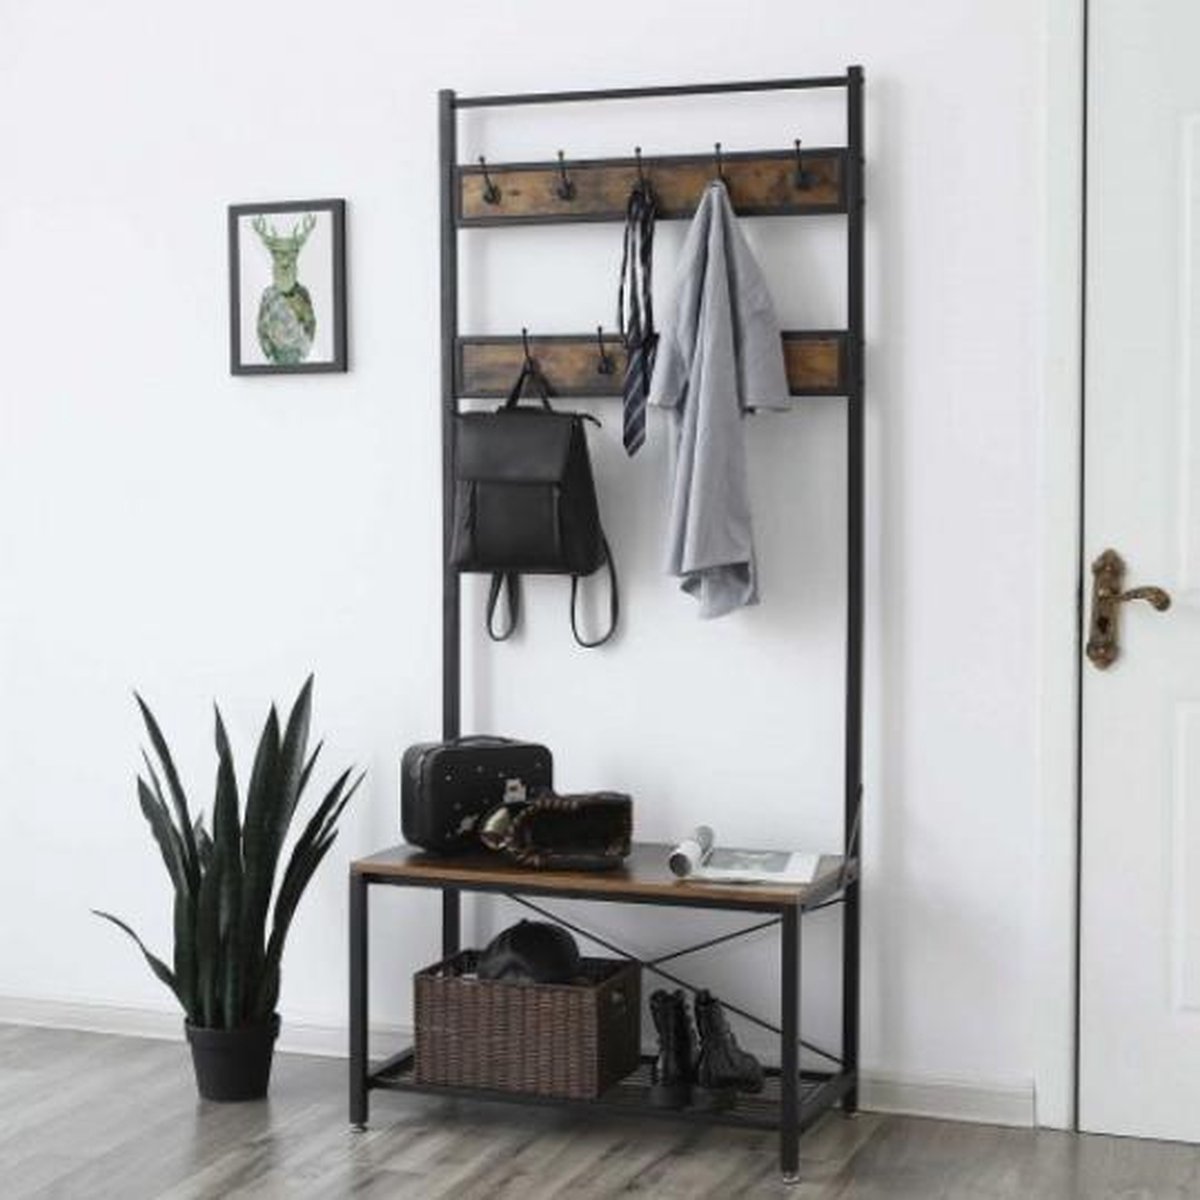 MIRA Home - Kapstok - Garderoberek met kapstok - Industrieel - Bruin/zwart - 184x42x80 - Merkloos